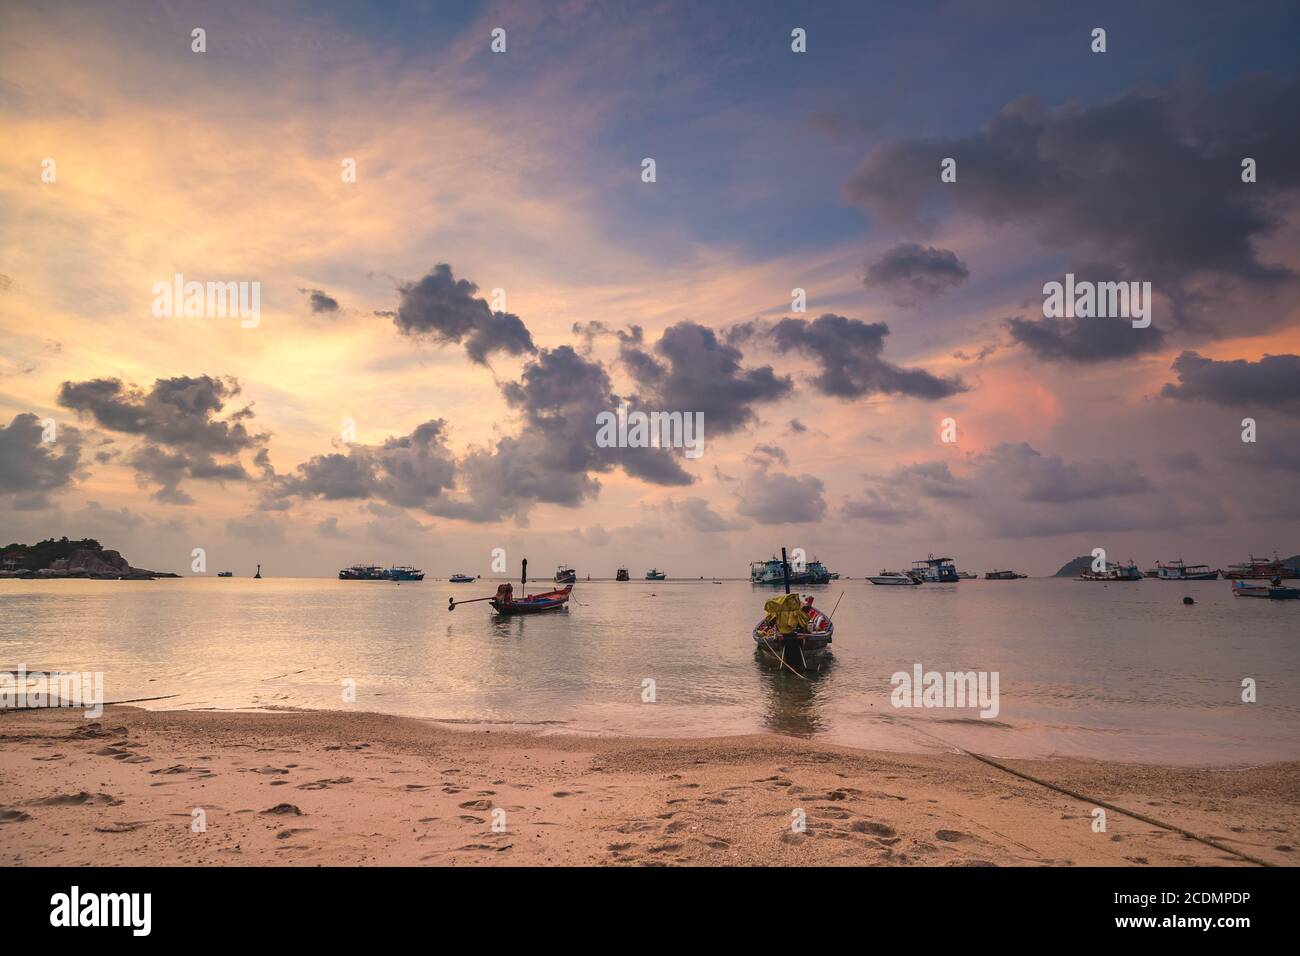 Sunrise Asia Hafen: Boote, Schiffe auf dem Ozean Golf. Unglaublicher Wassertransport am Sandstrand am thailändischen Pier. Epische Sonnenaufgangs Landschaft der asiatischen Transport in Sea Bay. Romantische, warme Szenenaufnahme Stockfoto